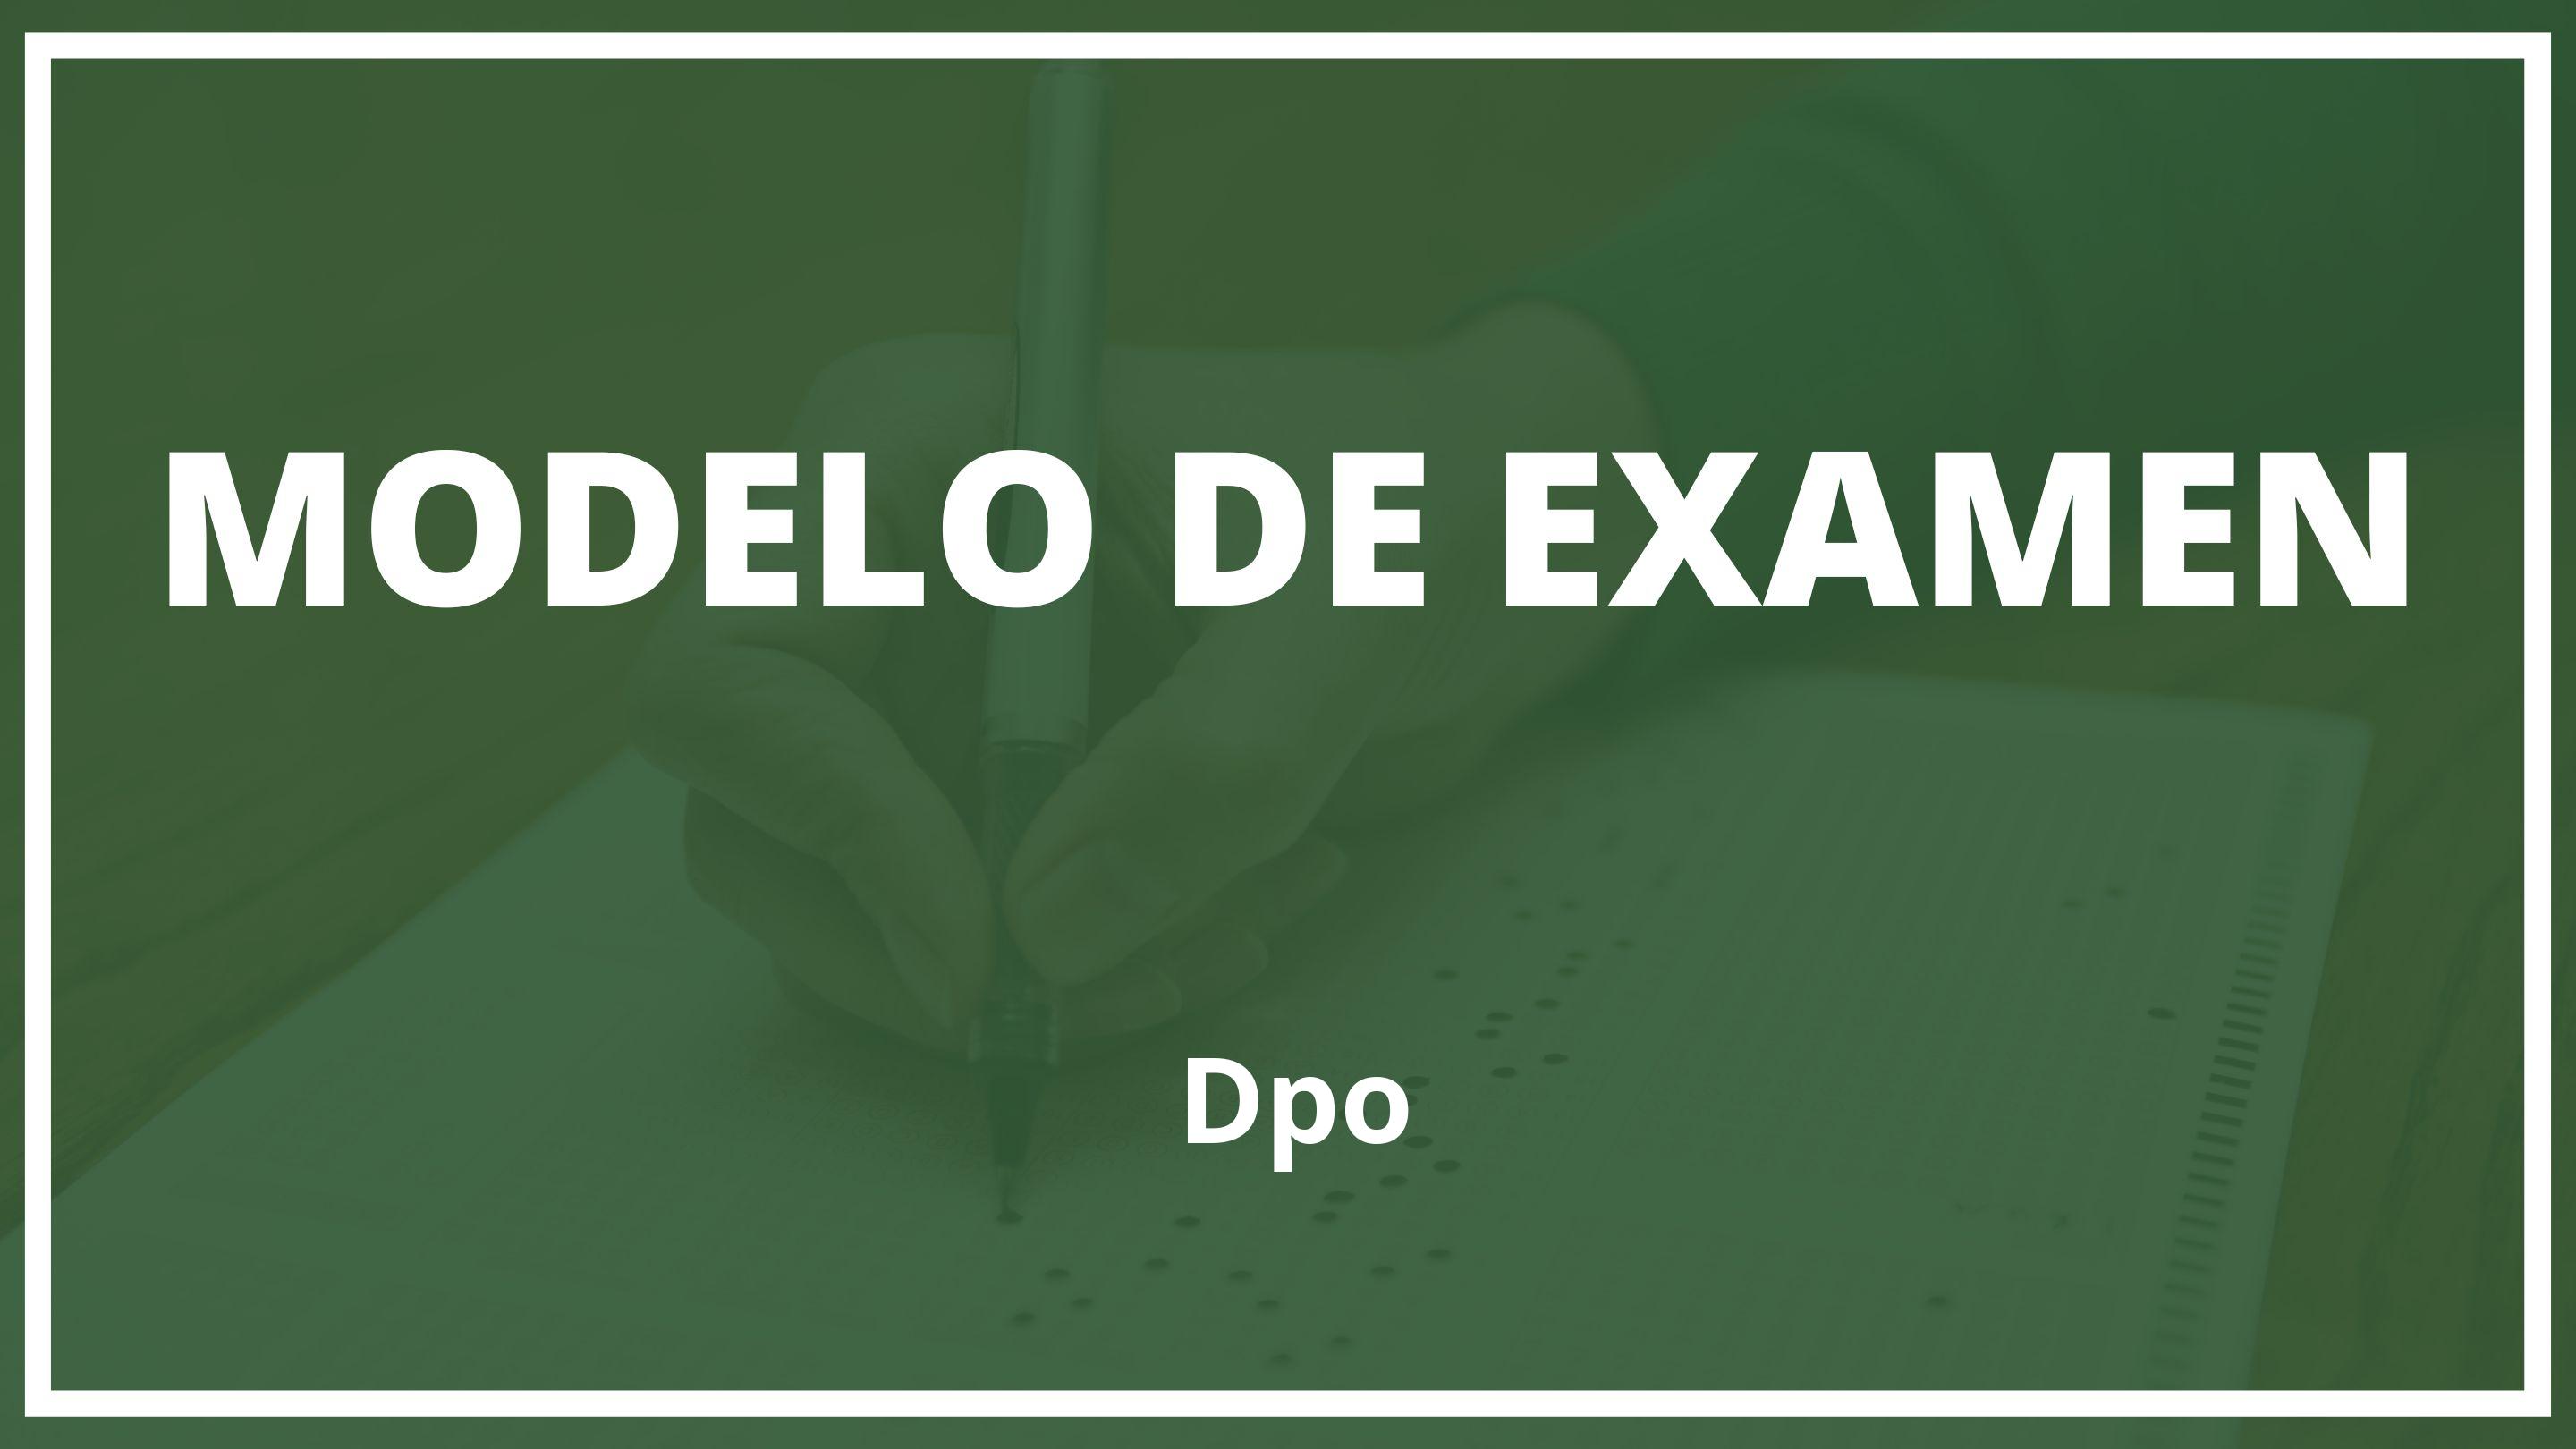 Examen Dpo